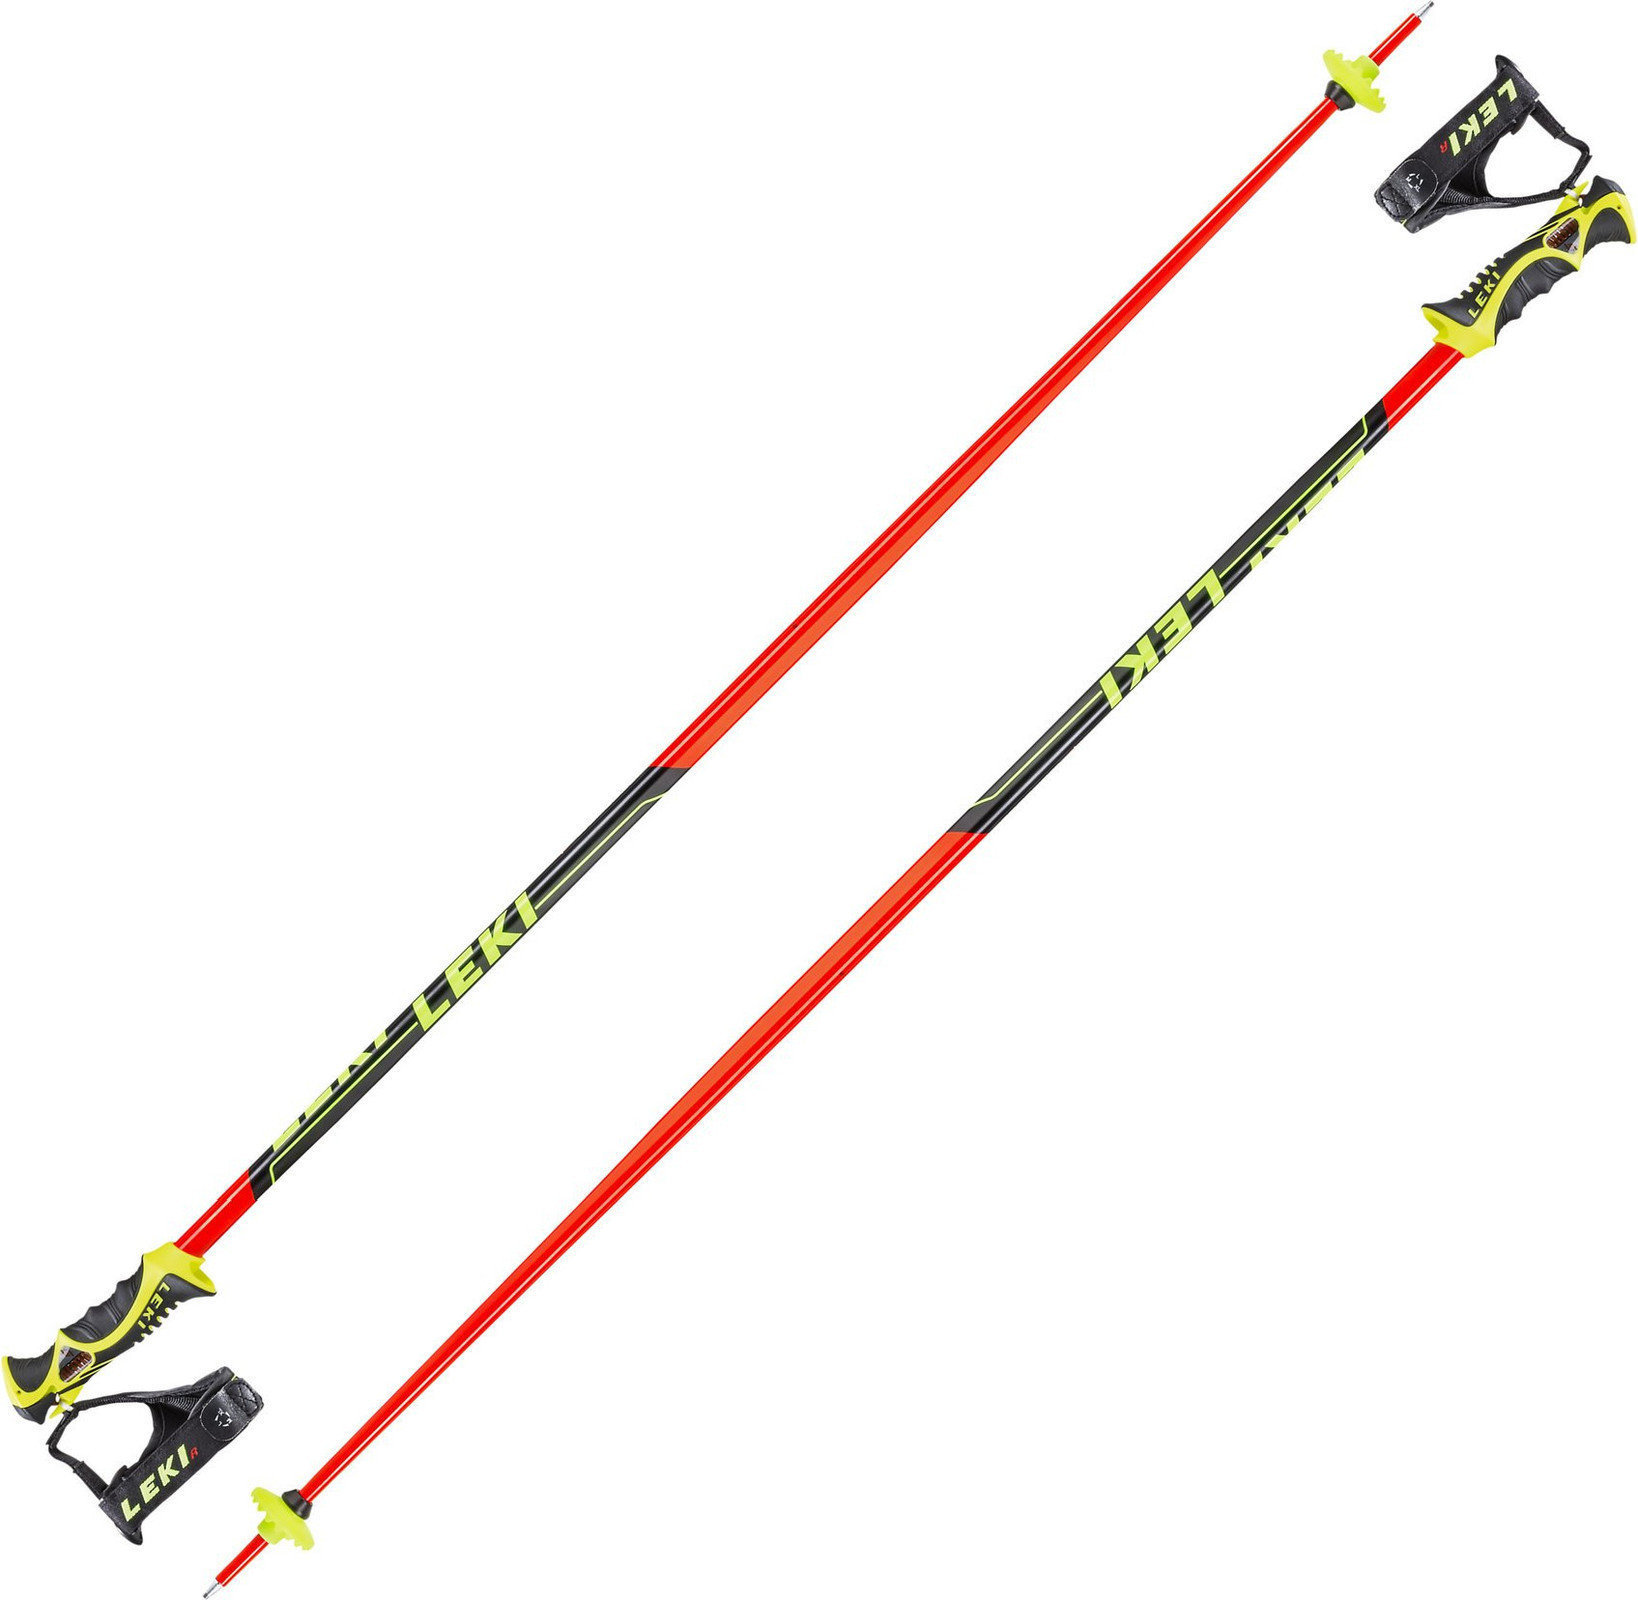 Bețe de schi Leki Worldcup Racing SL Neonred/Black/White/Yellow 135 cm Bețe de schi